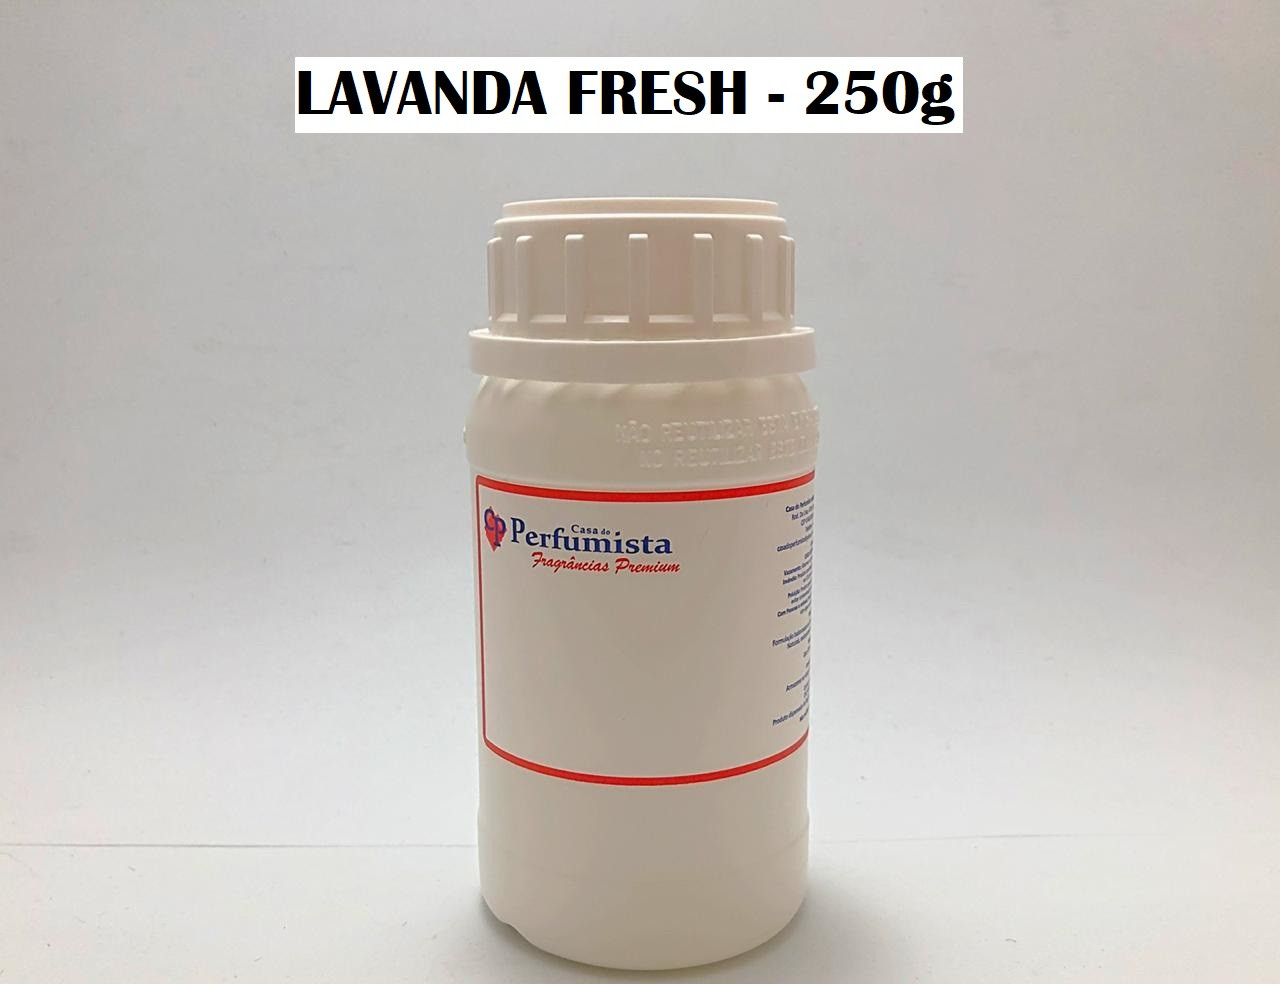 LAVANDA FRESH - 250g